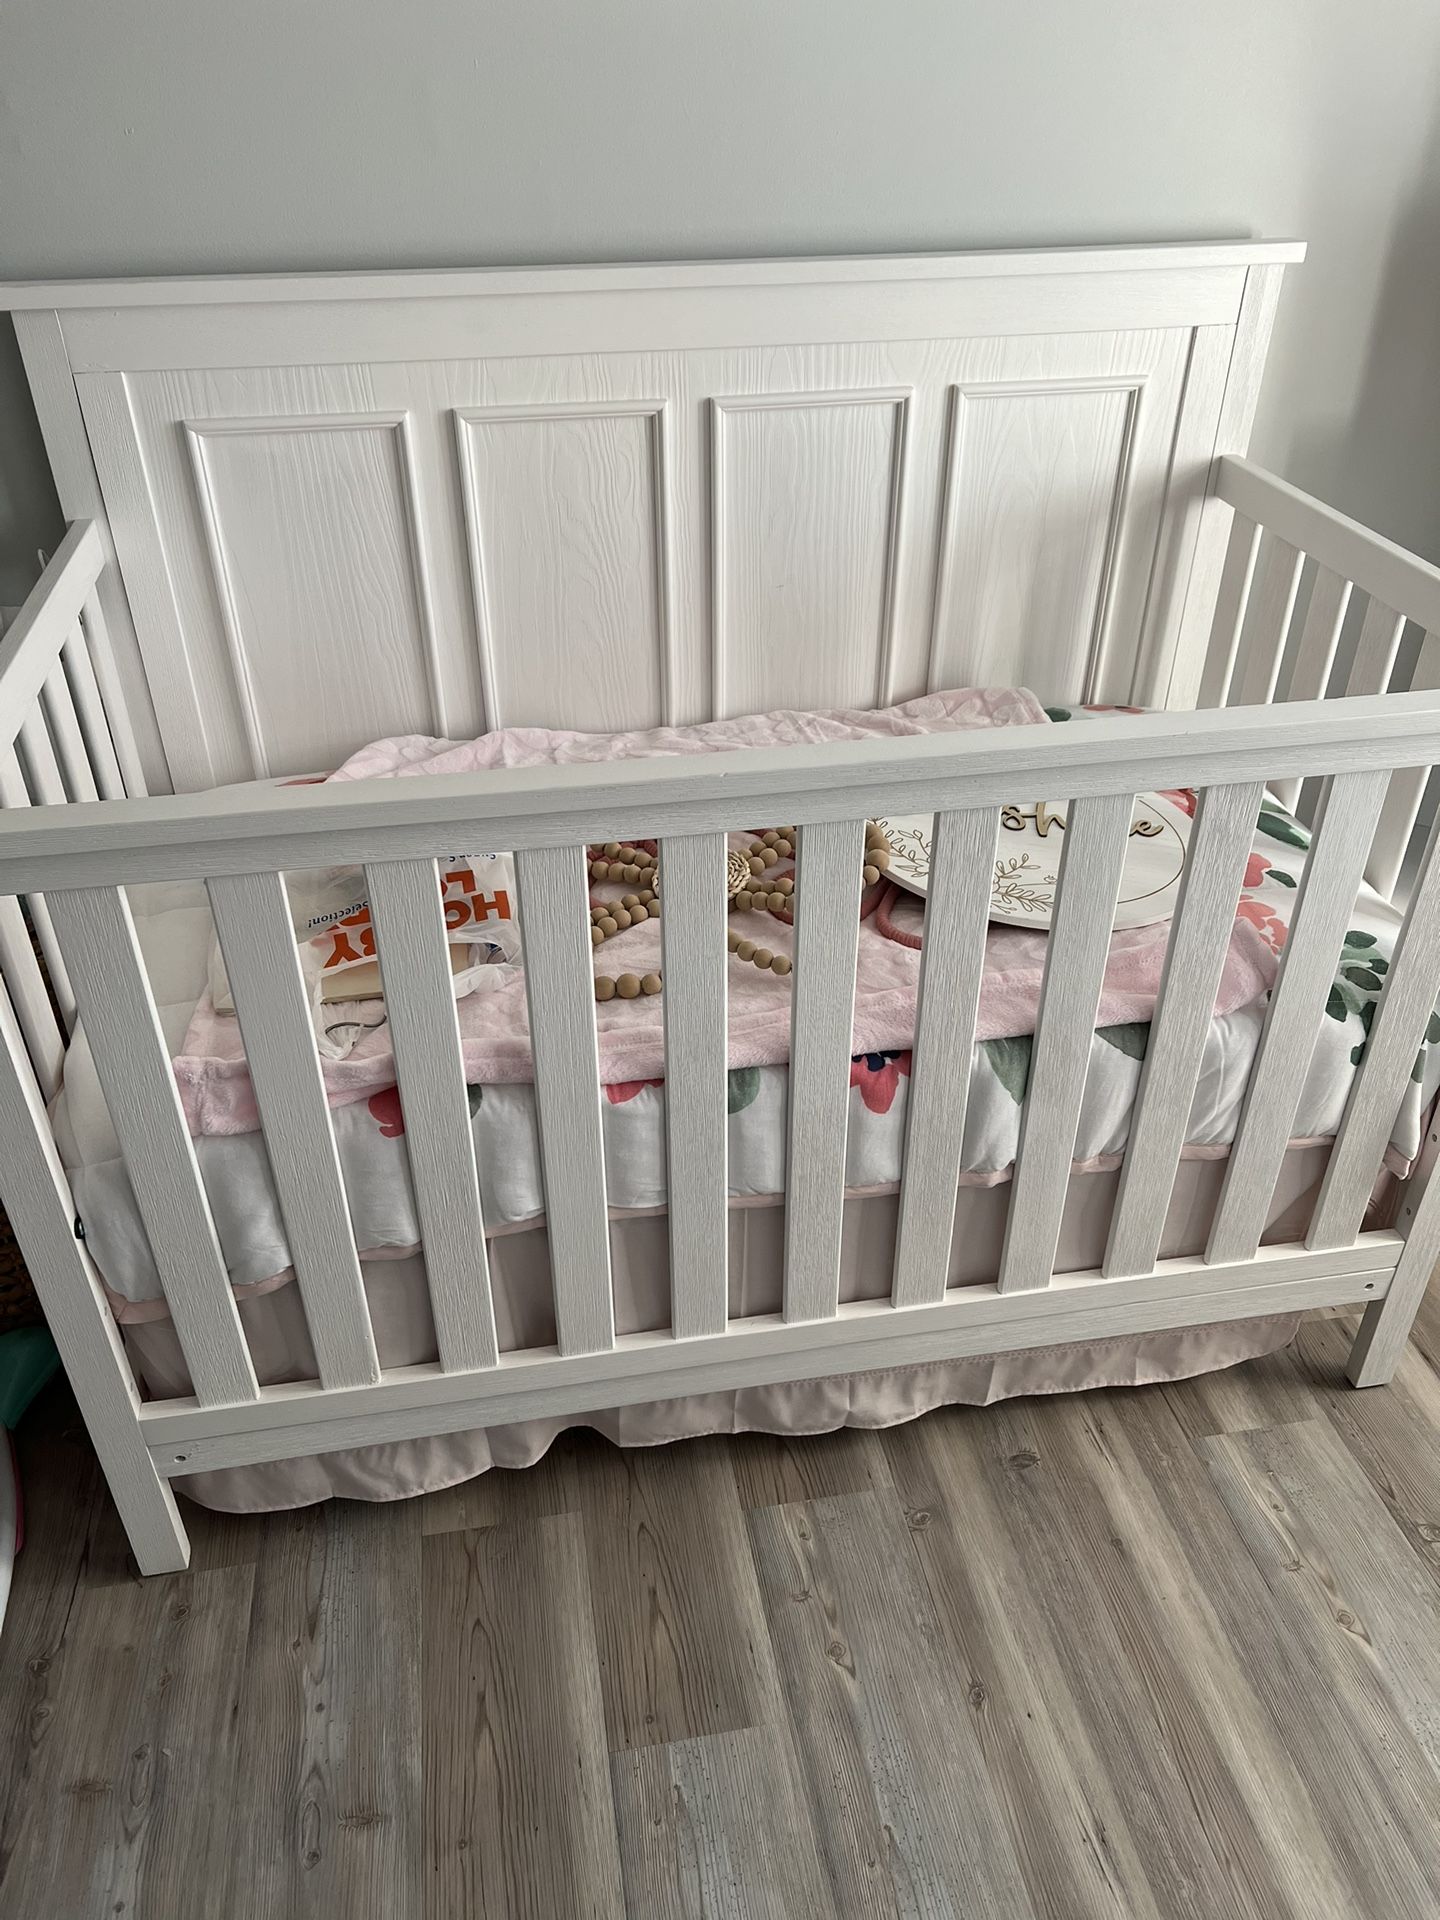 Brand New Crib